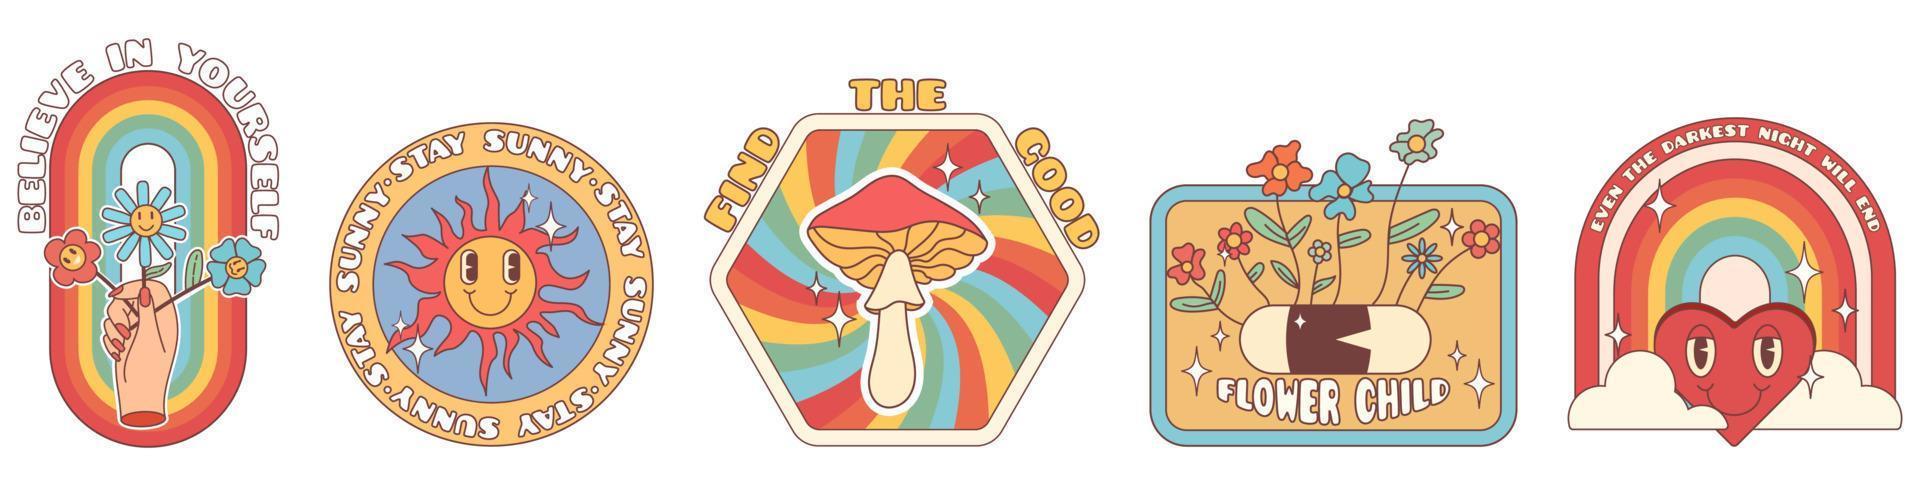 adesivos de hippie groovy dos anos 70. flor de desenho animado engraçado, arco-íris, coração, margarida, cogumelo etc. pacote de adesivos no estilo de desenho animado psicodélico retrô na moda. vetor